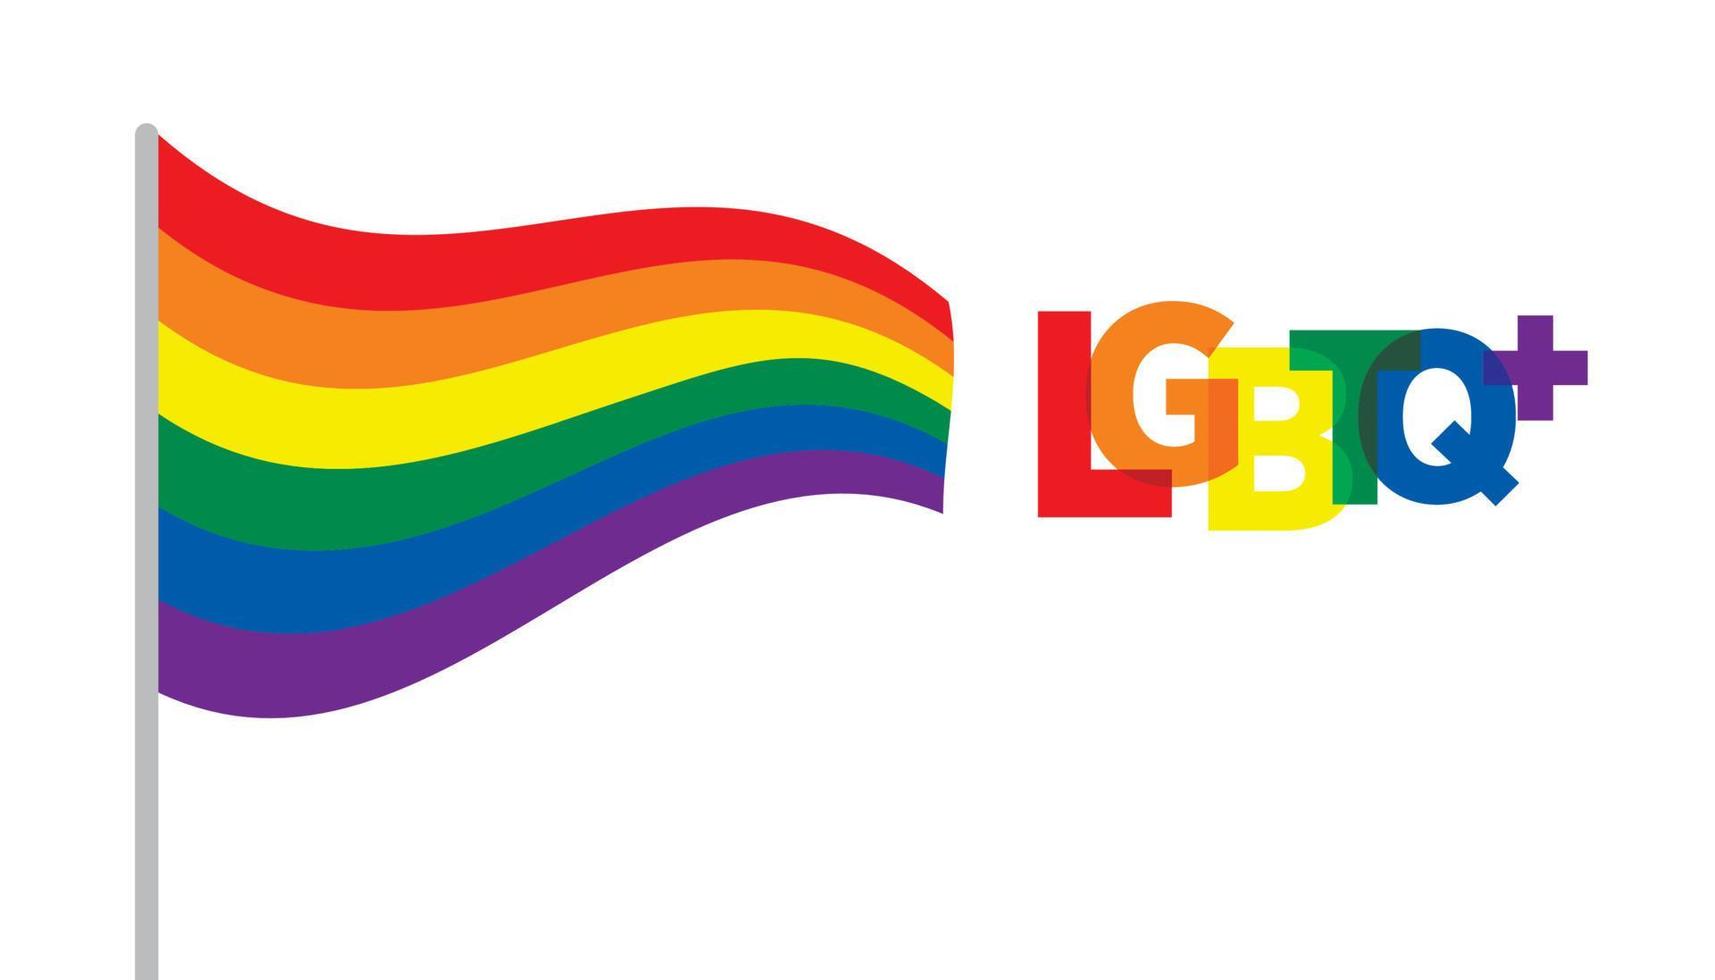 bandeira ondulada lgbt e inscrição. design de cor lgbtq, ilustração vetorial. conceitos de pessoas gays, lésbicas, bissexuais, homossexuais, transgêneros. vetor